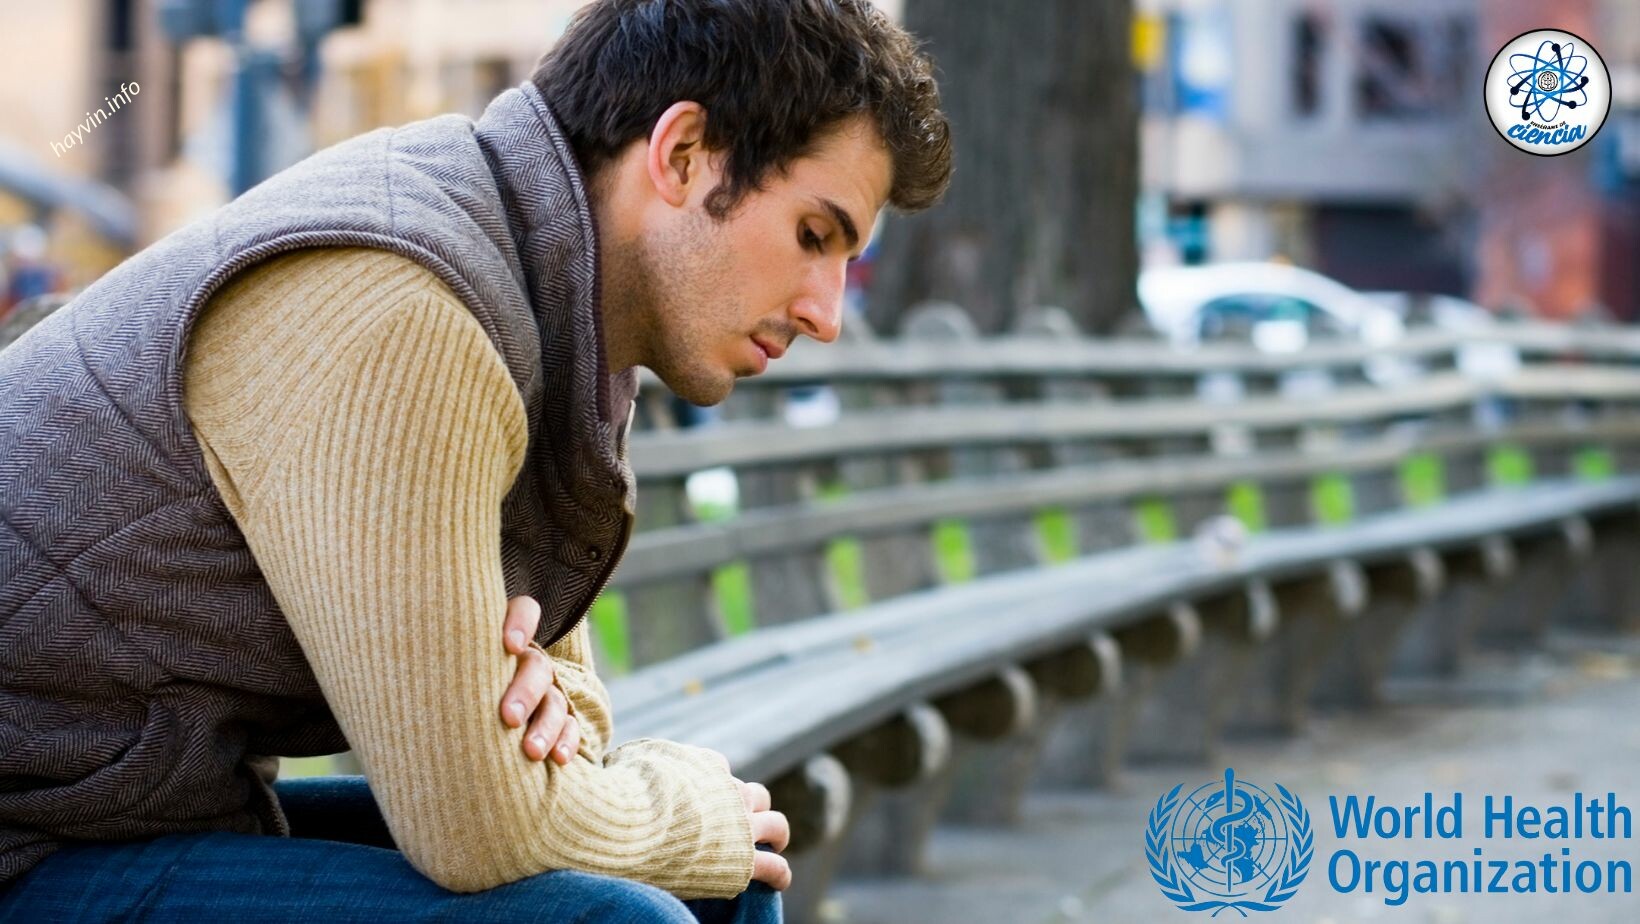 A WHO „globális népegészségügyi problémának” nyilvánítja ezt a sok férfival előforduló helyzetet